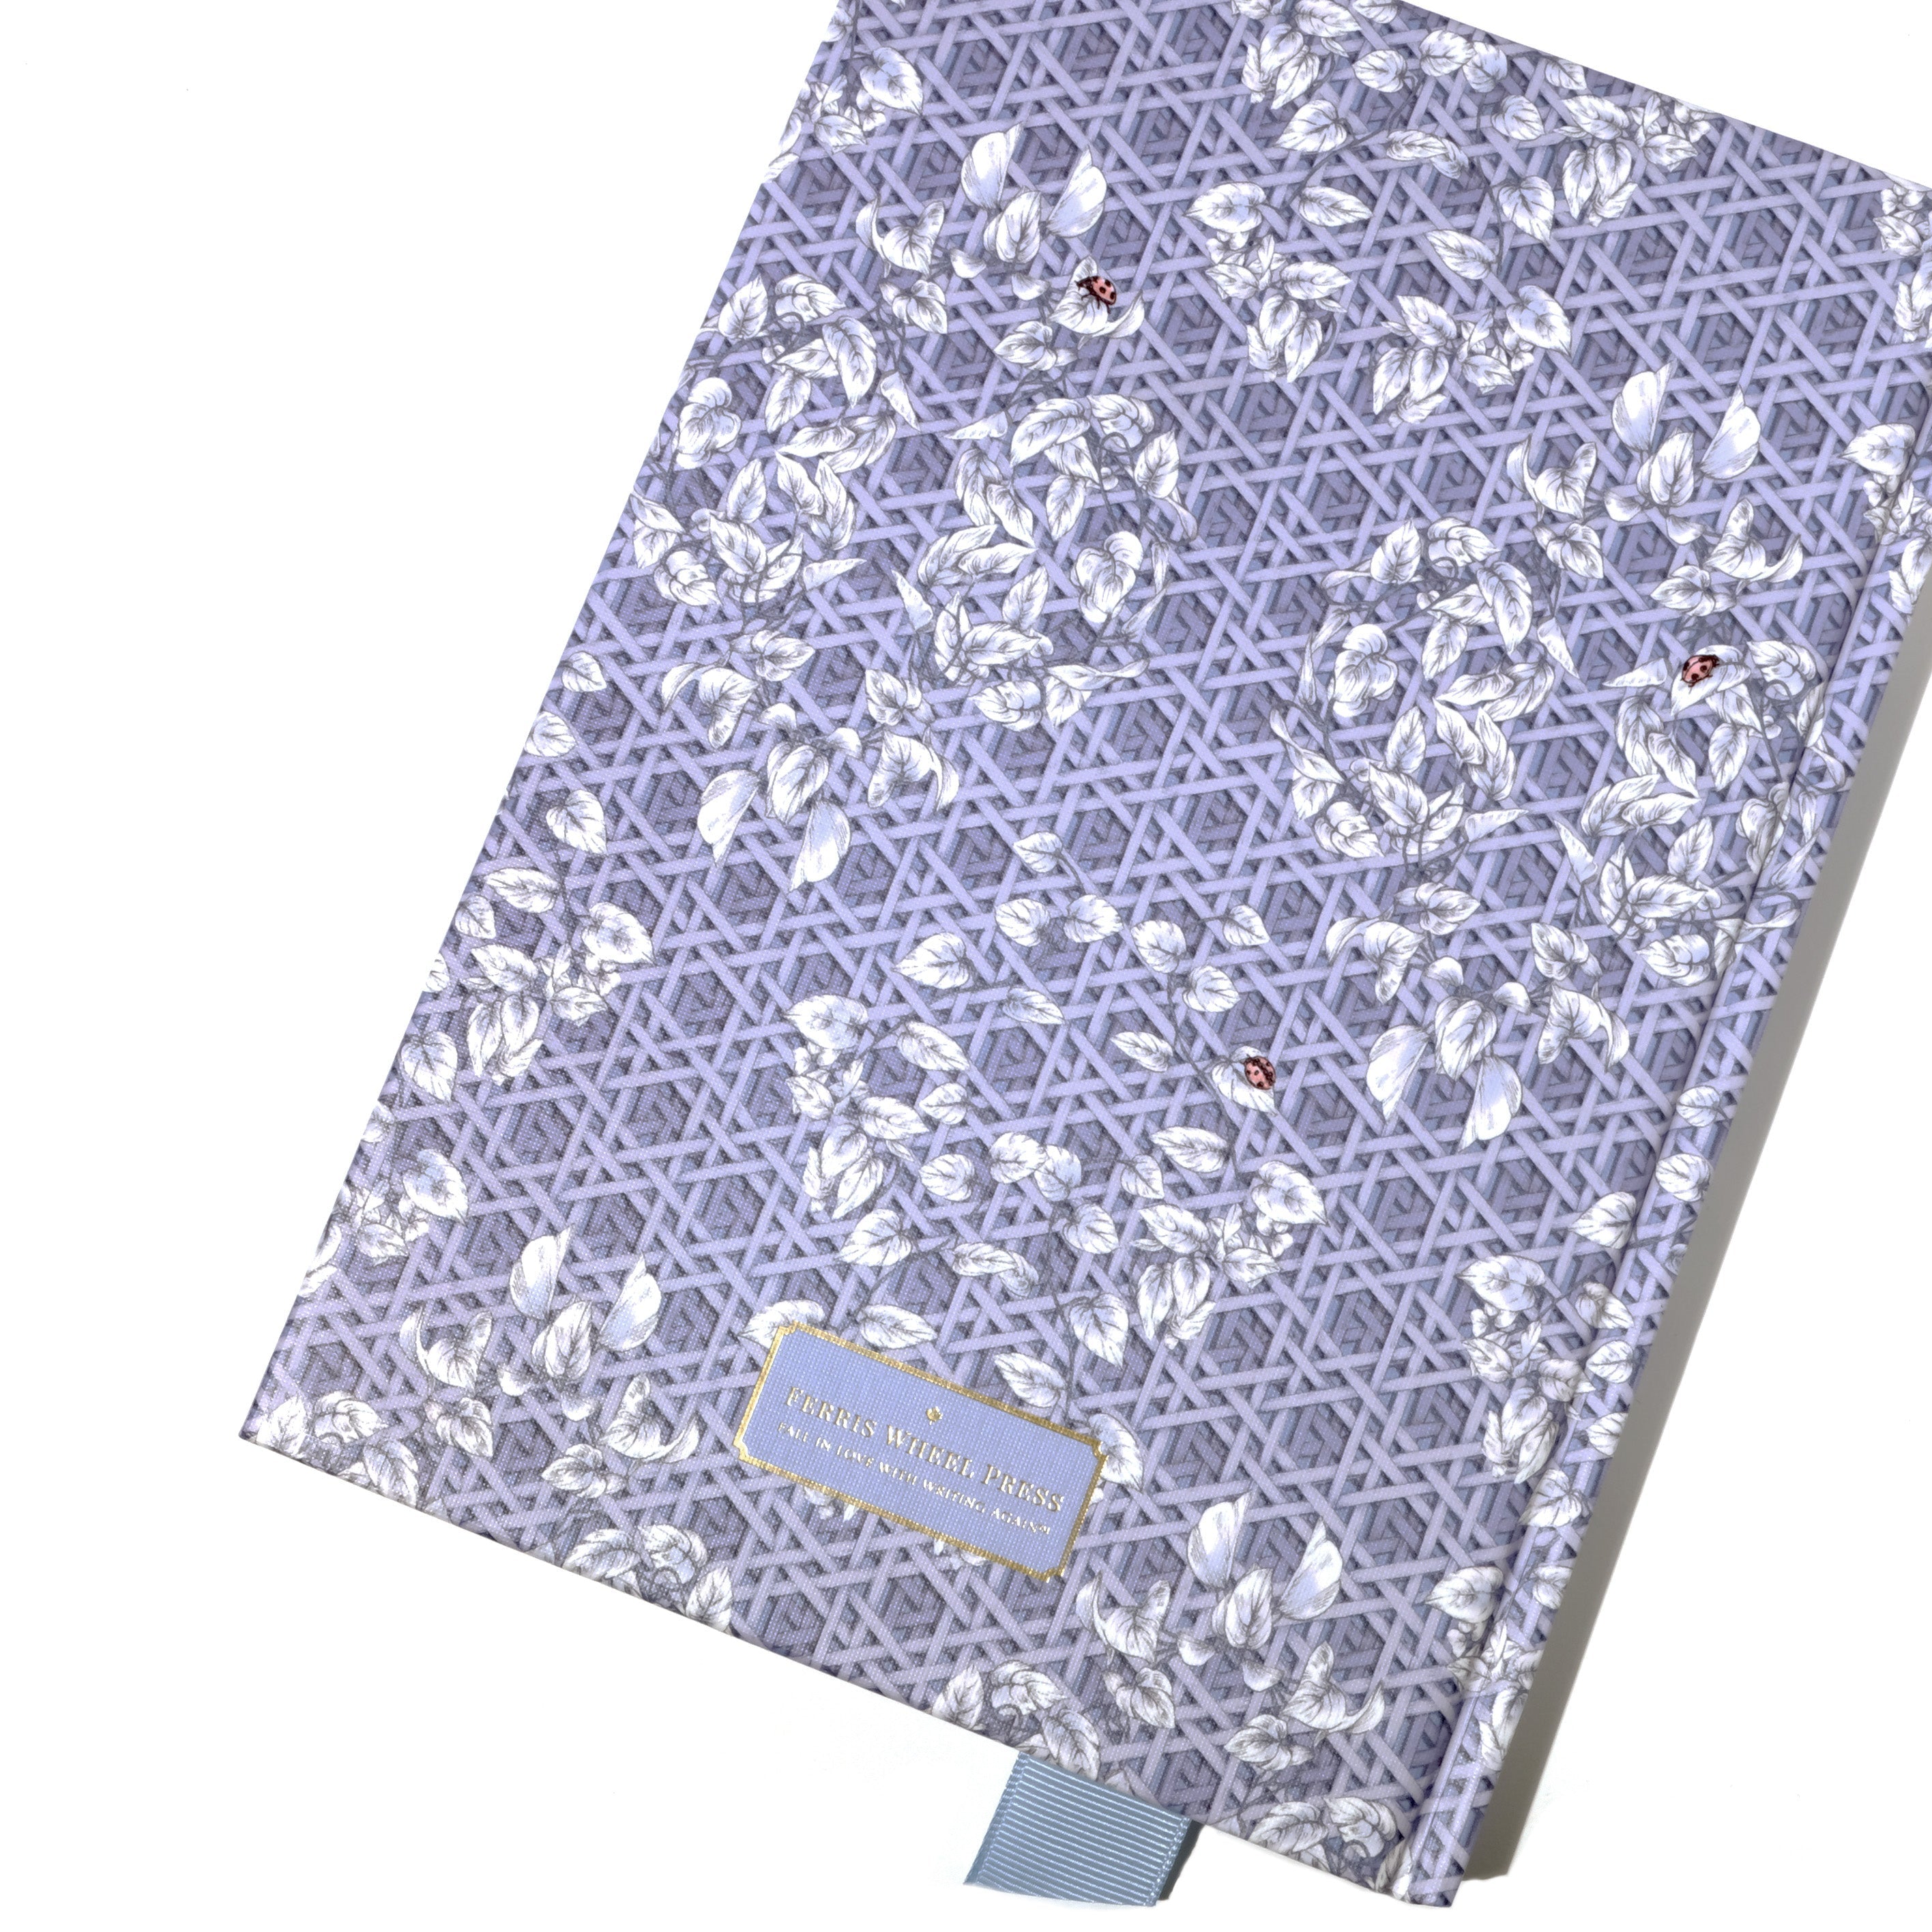 The Sketchbook A5 Enveloped in Rattan - Violet Blue